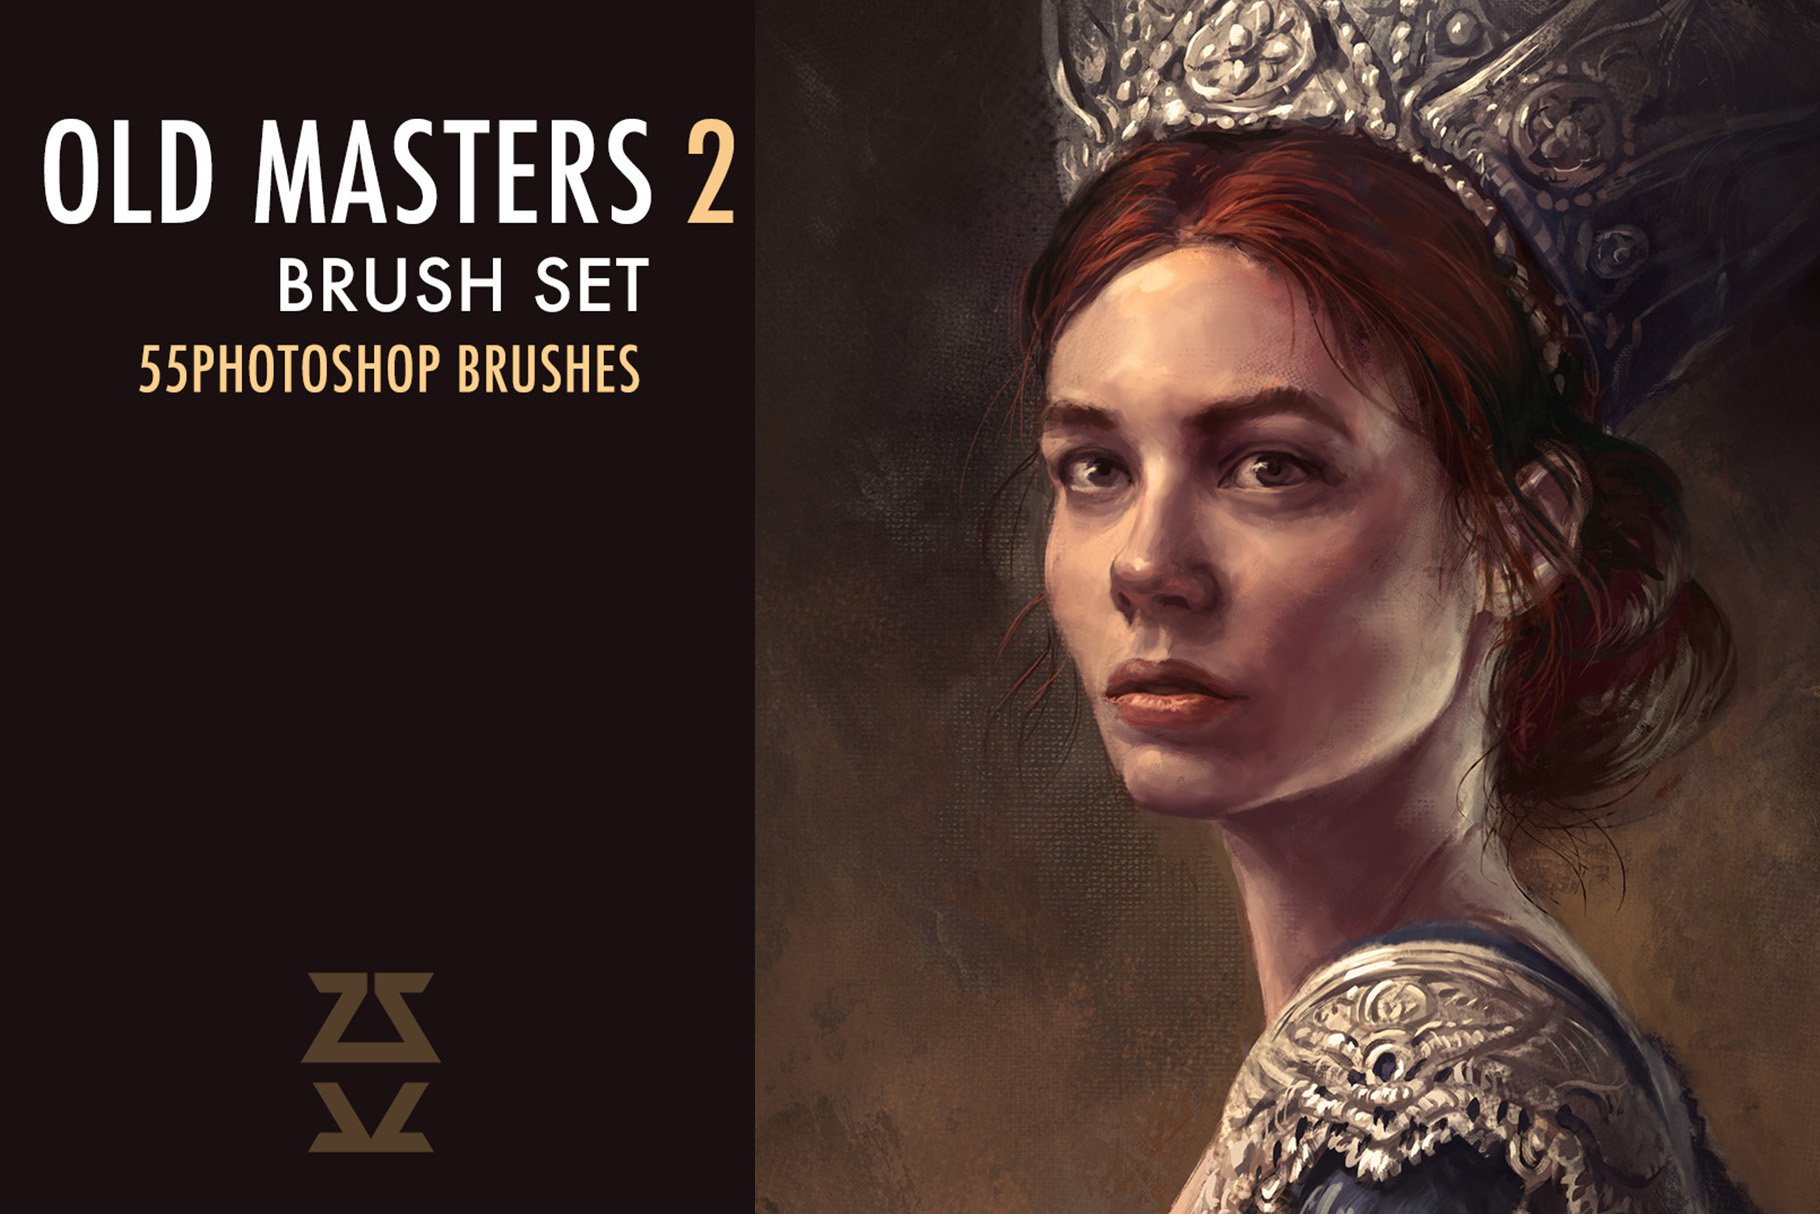 Old Masters 2 Brush Setcover image.